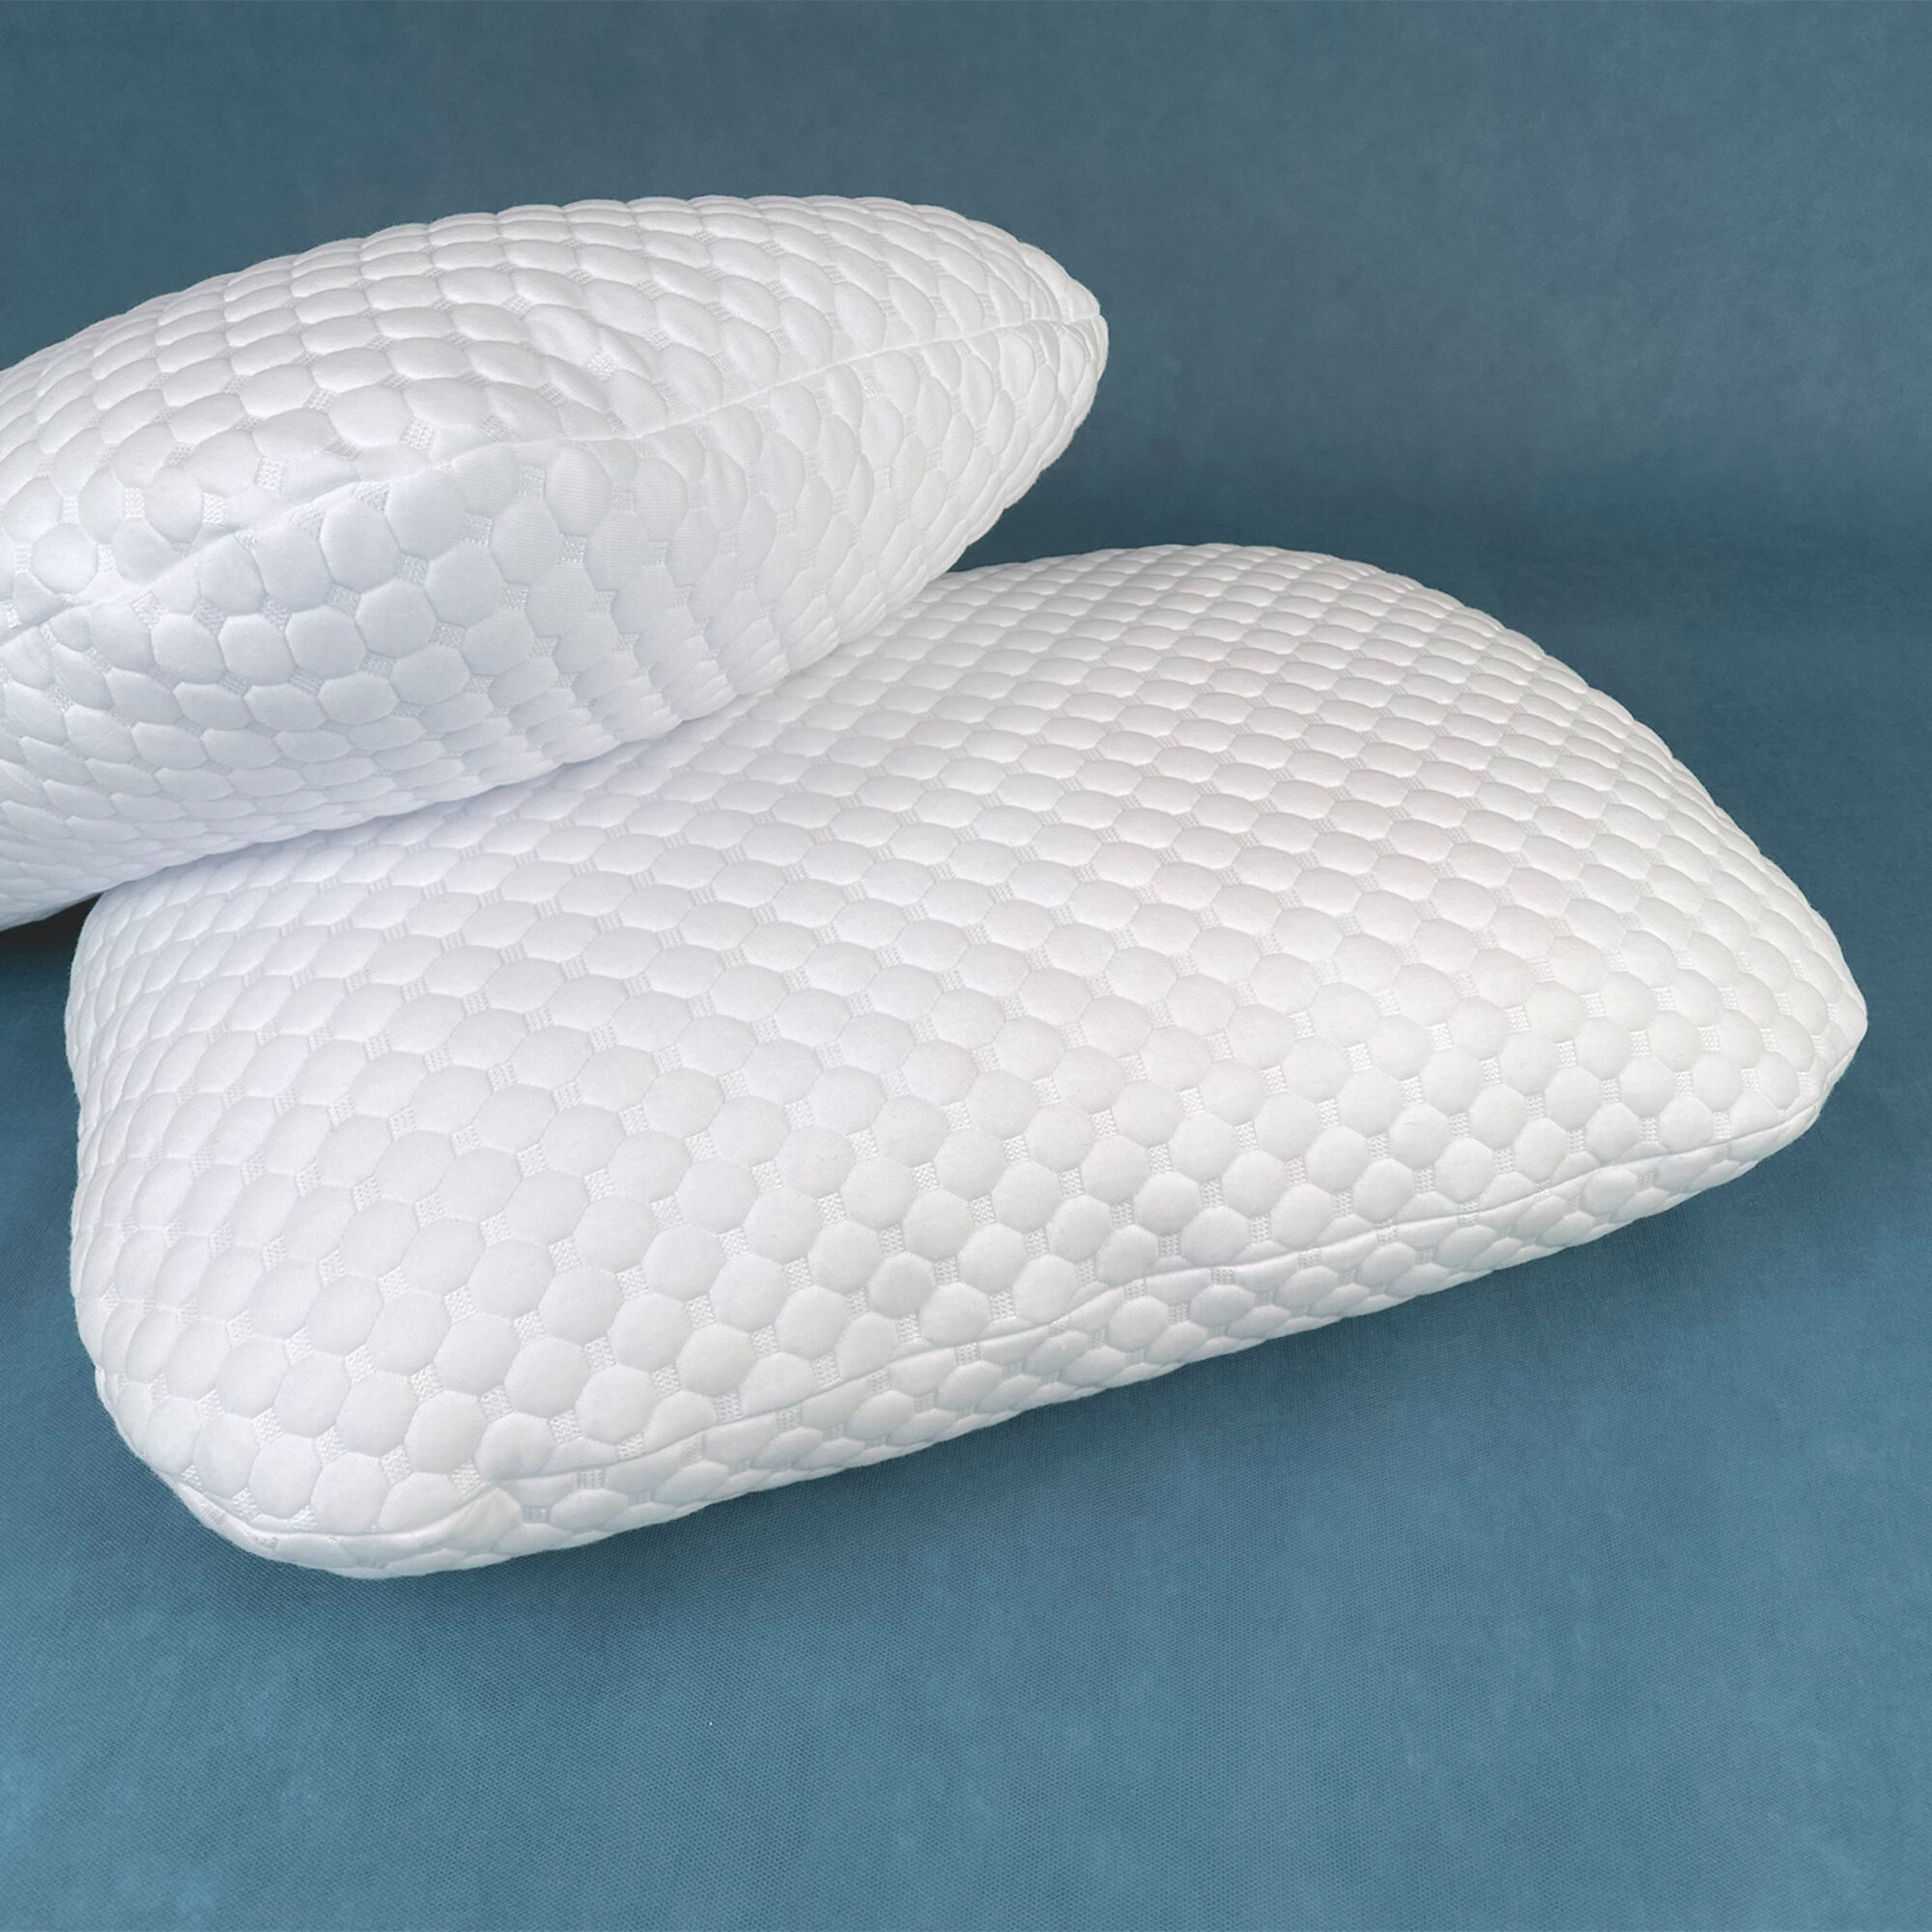 Подушка ортопедическая 40х60 см "просто подушка №1" с эффектом памяти для сна для взрослых и детей классика.